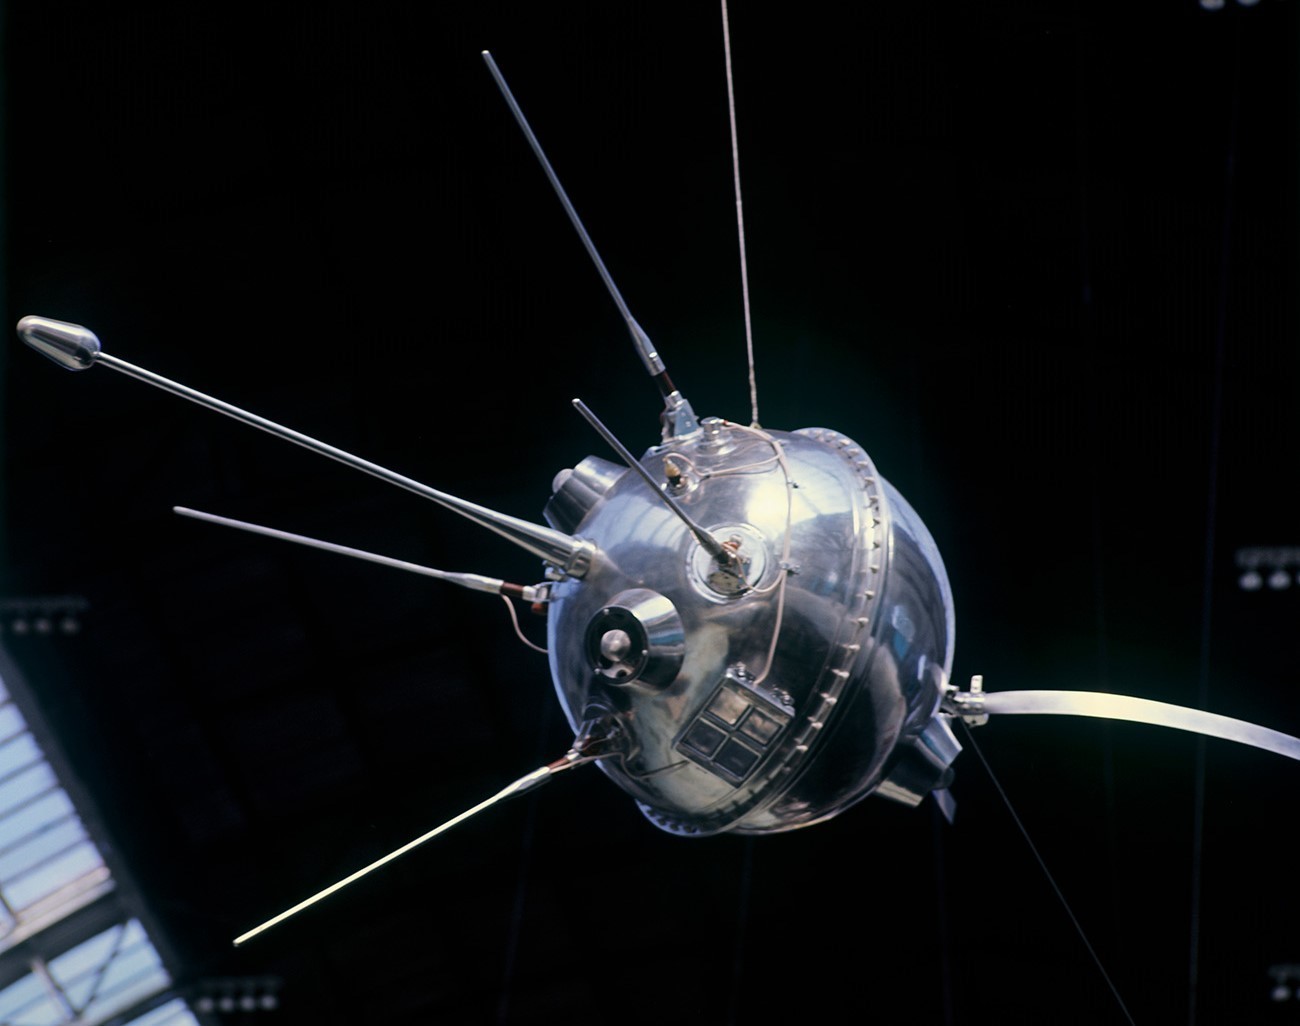 Интерпланетарната станица „Луна 1“ во павилјонот „Космос“ на изложбениот комплекс ВДНХ.

